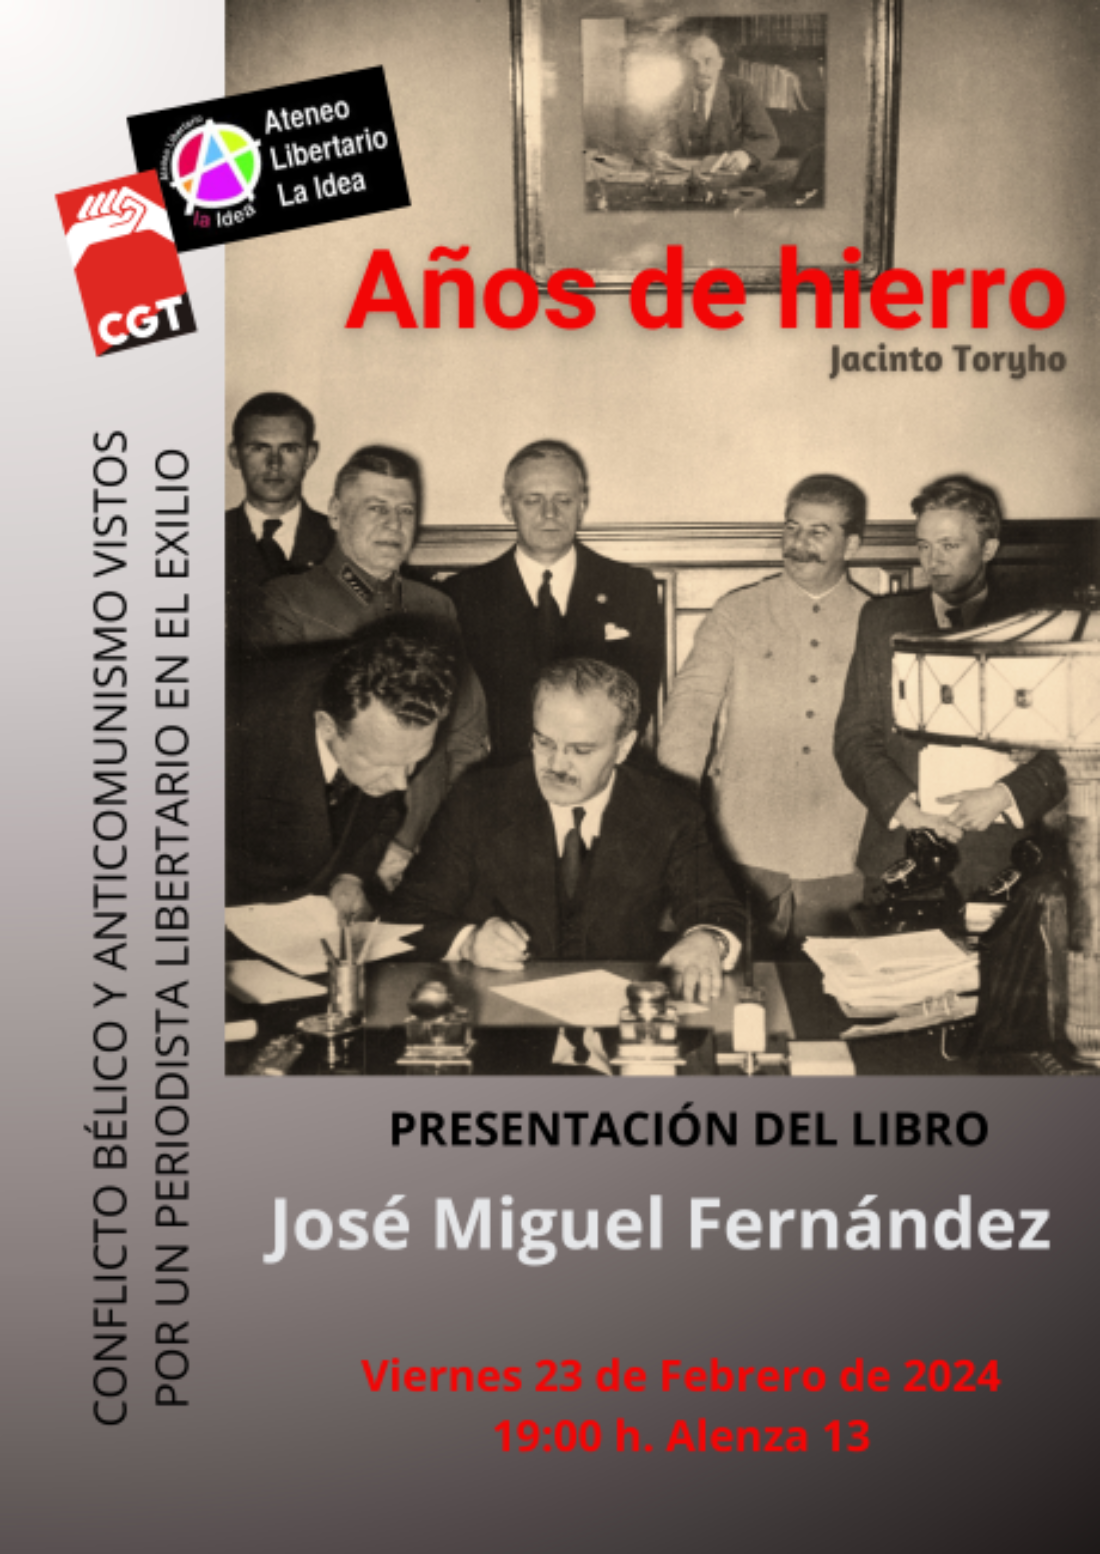 Presentación del libro «Años de hierro» de Jacinto Toryho por José Miguel Fernández Barreira, responsable de la edición